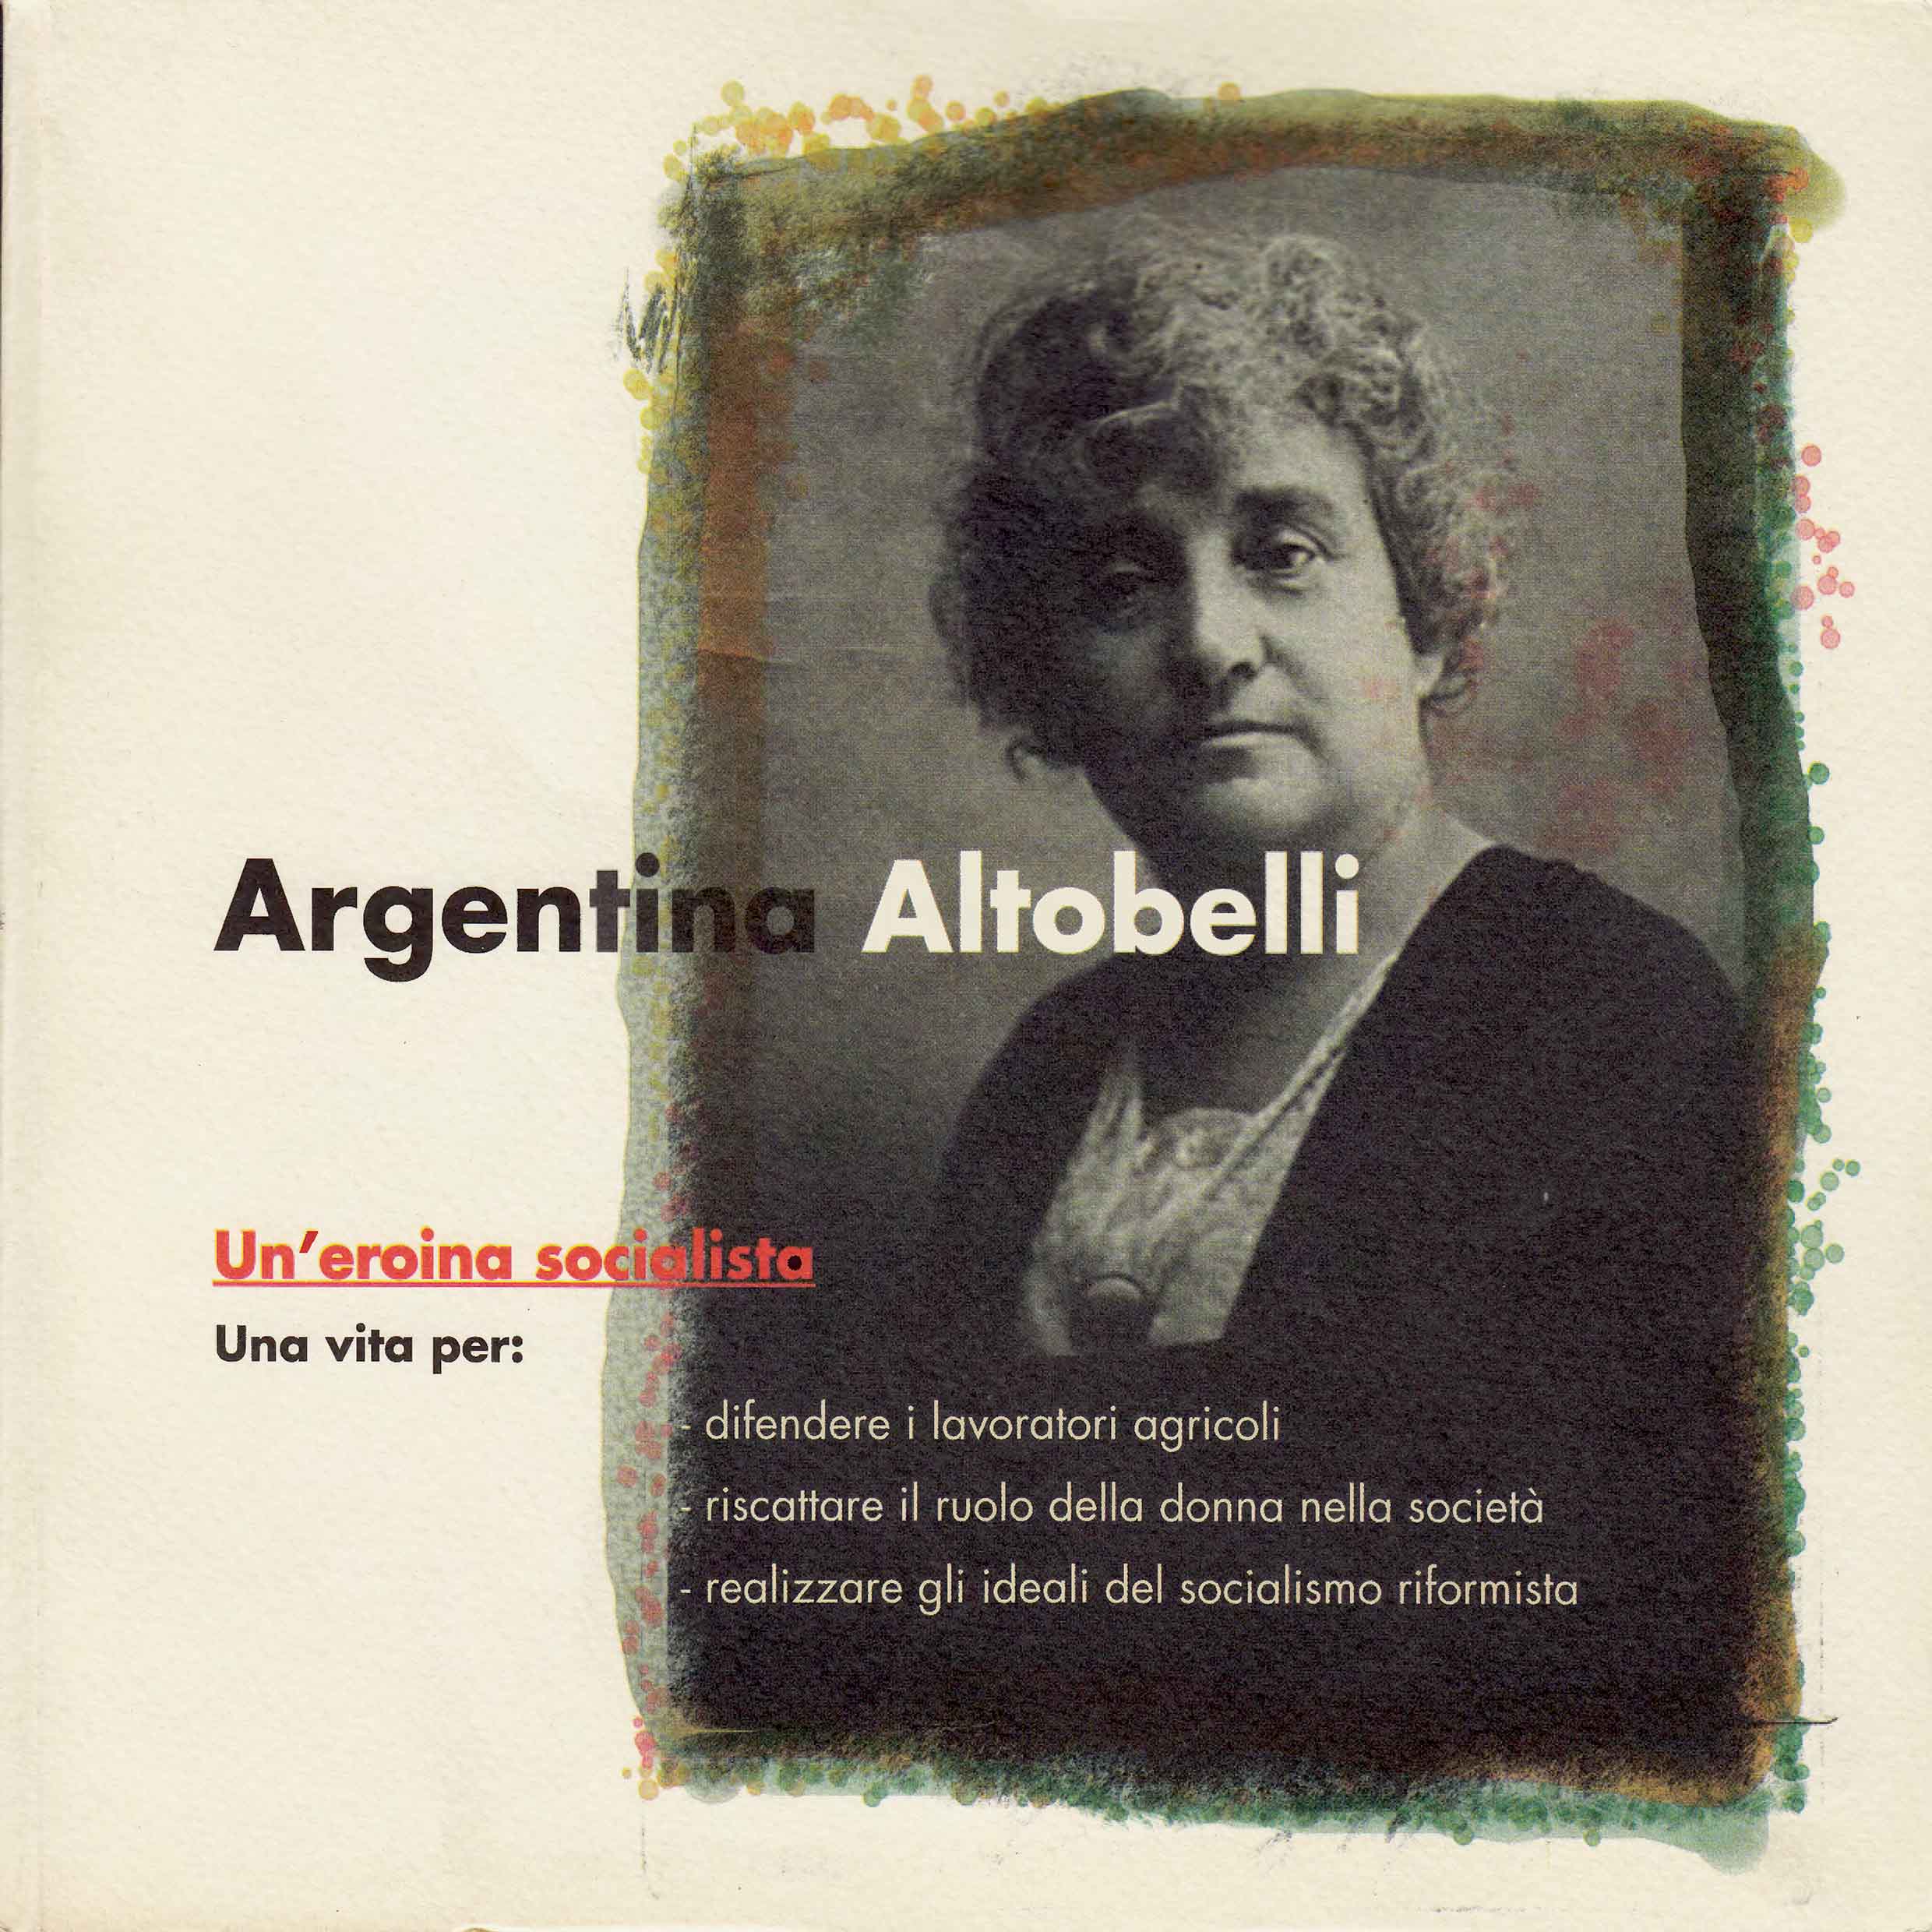 Argentina Altobelli, un’eroina socialista